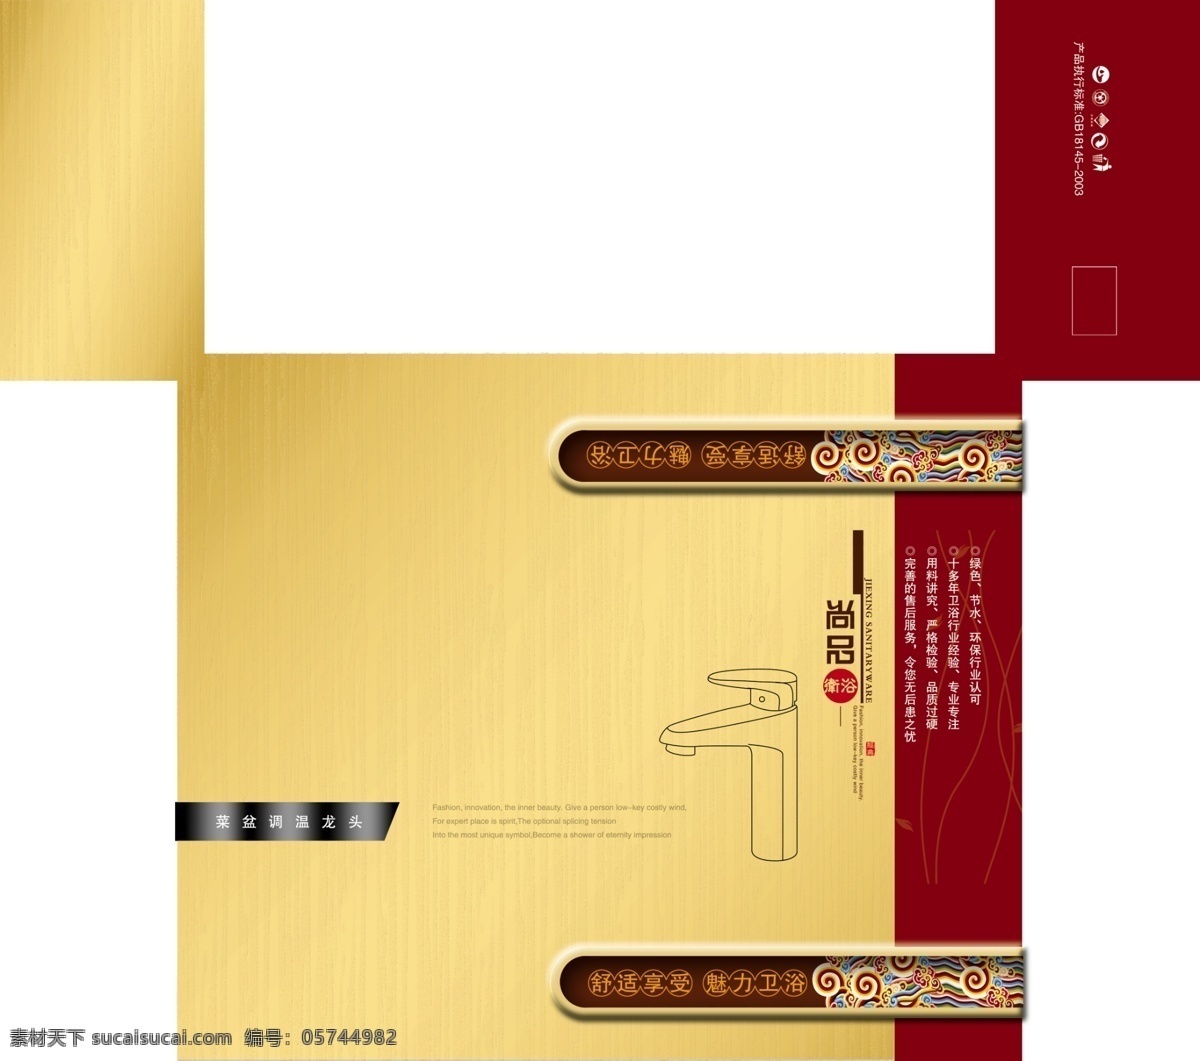 包装模板 包装设计 广告设计模板 红色 黄色 尚品 水纹 卫浴包装 包装 模板 模板下载 舒适享受 源文件 psd源文件